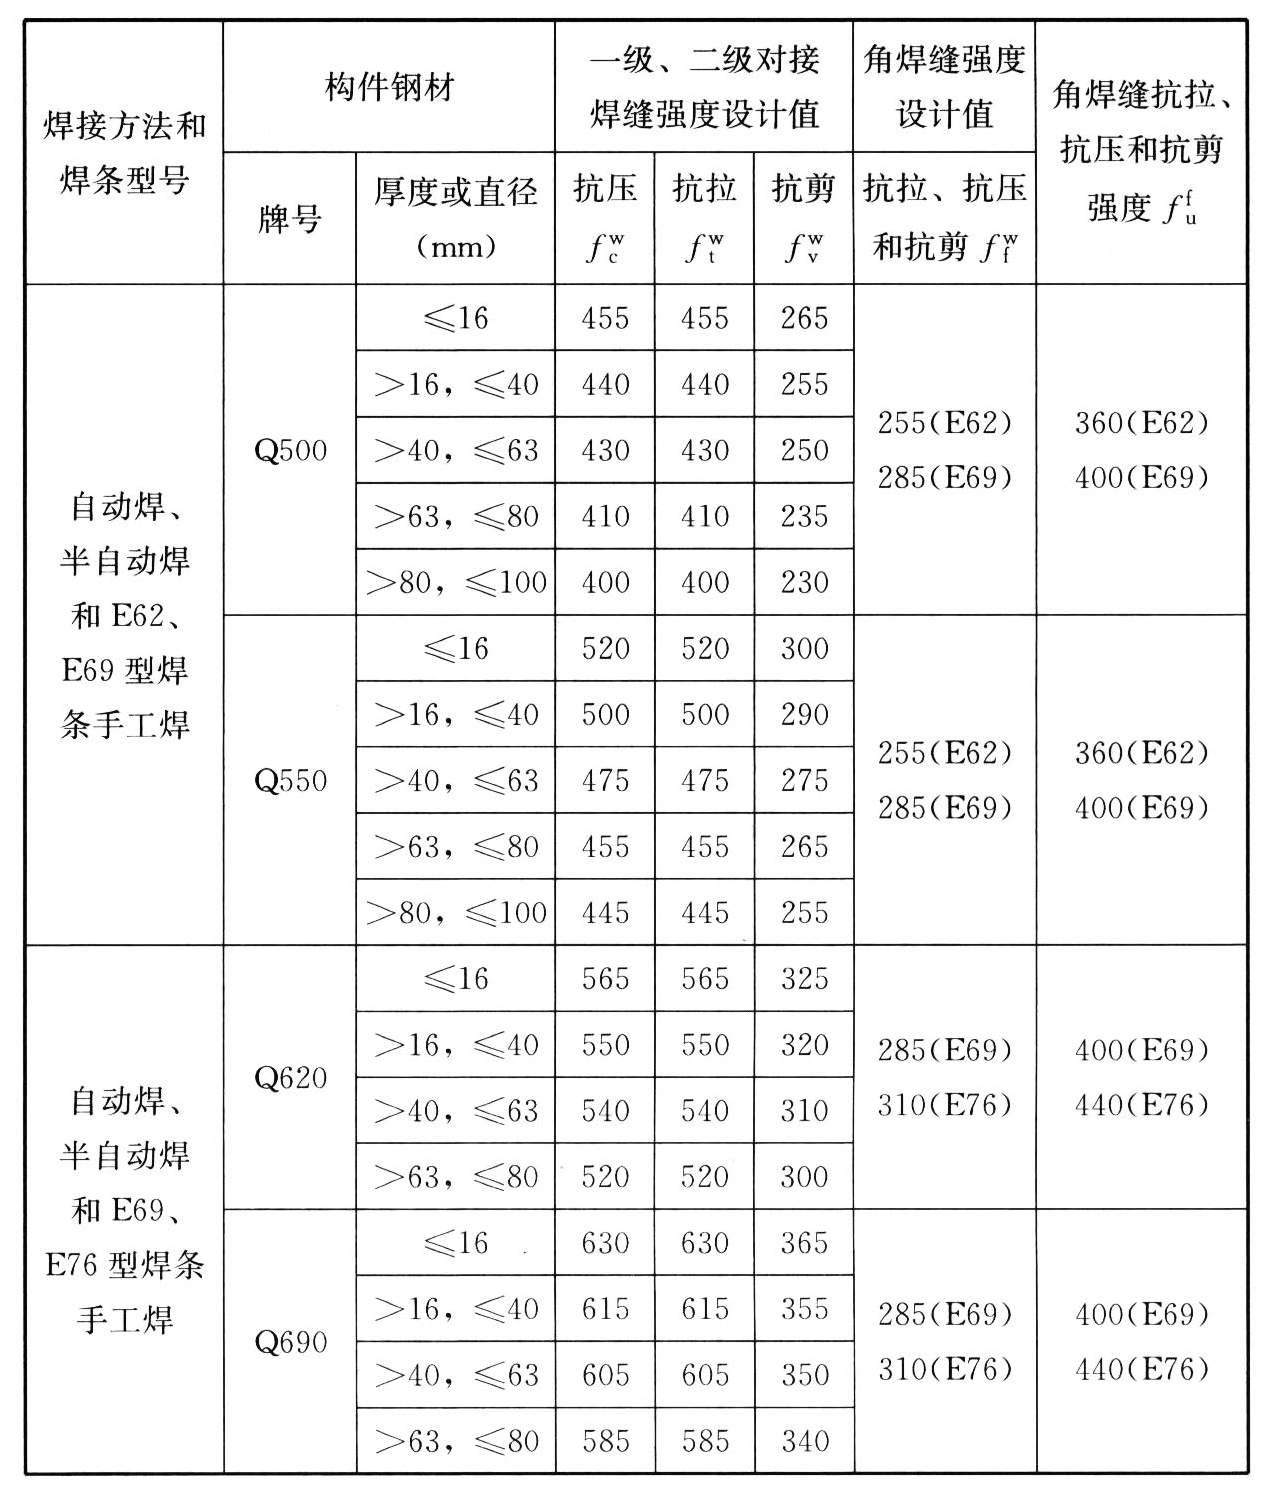 表4.4.3 焊缝强度设计指标（N/mm）